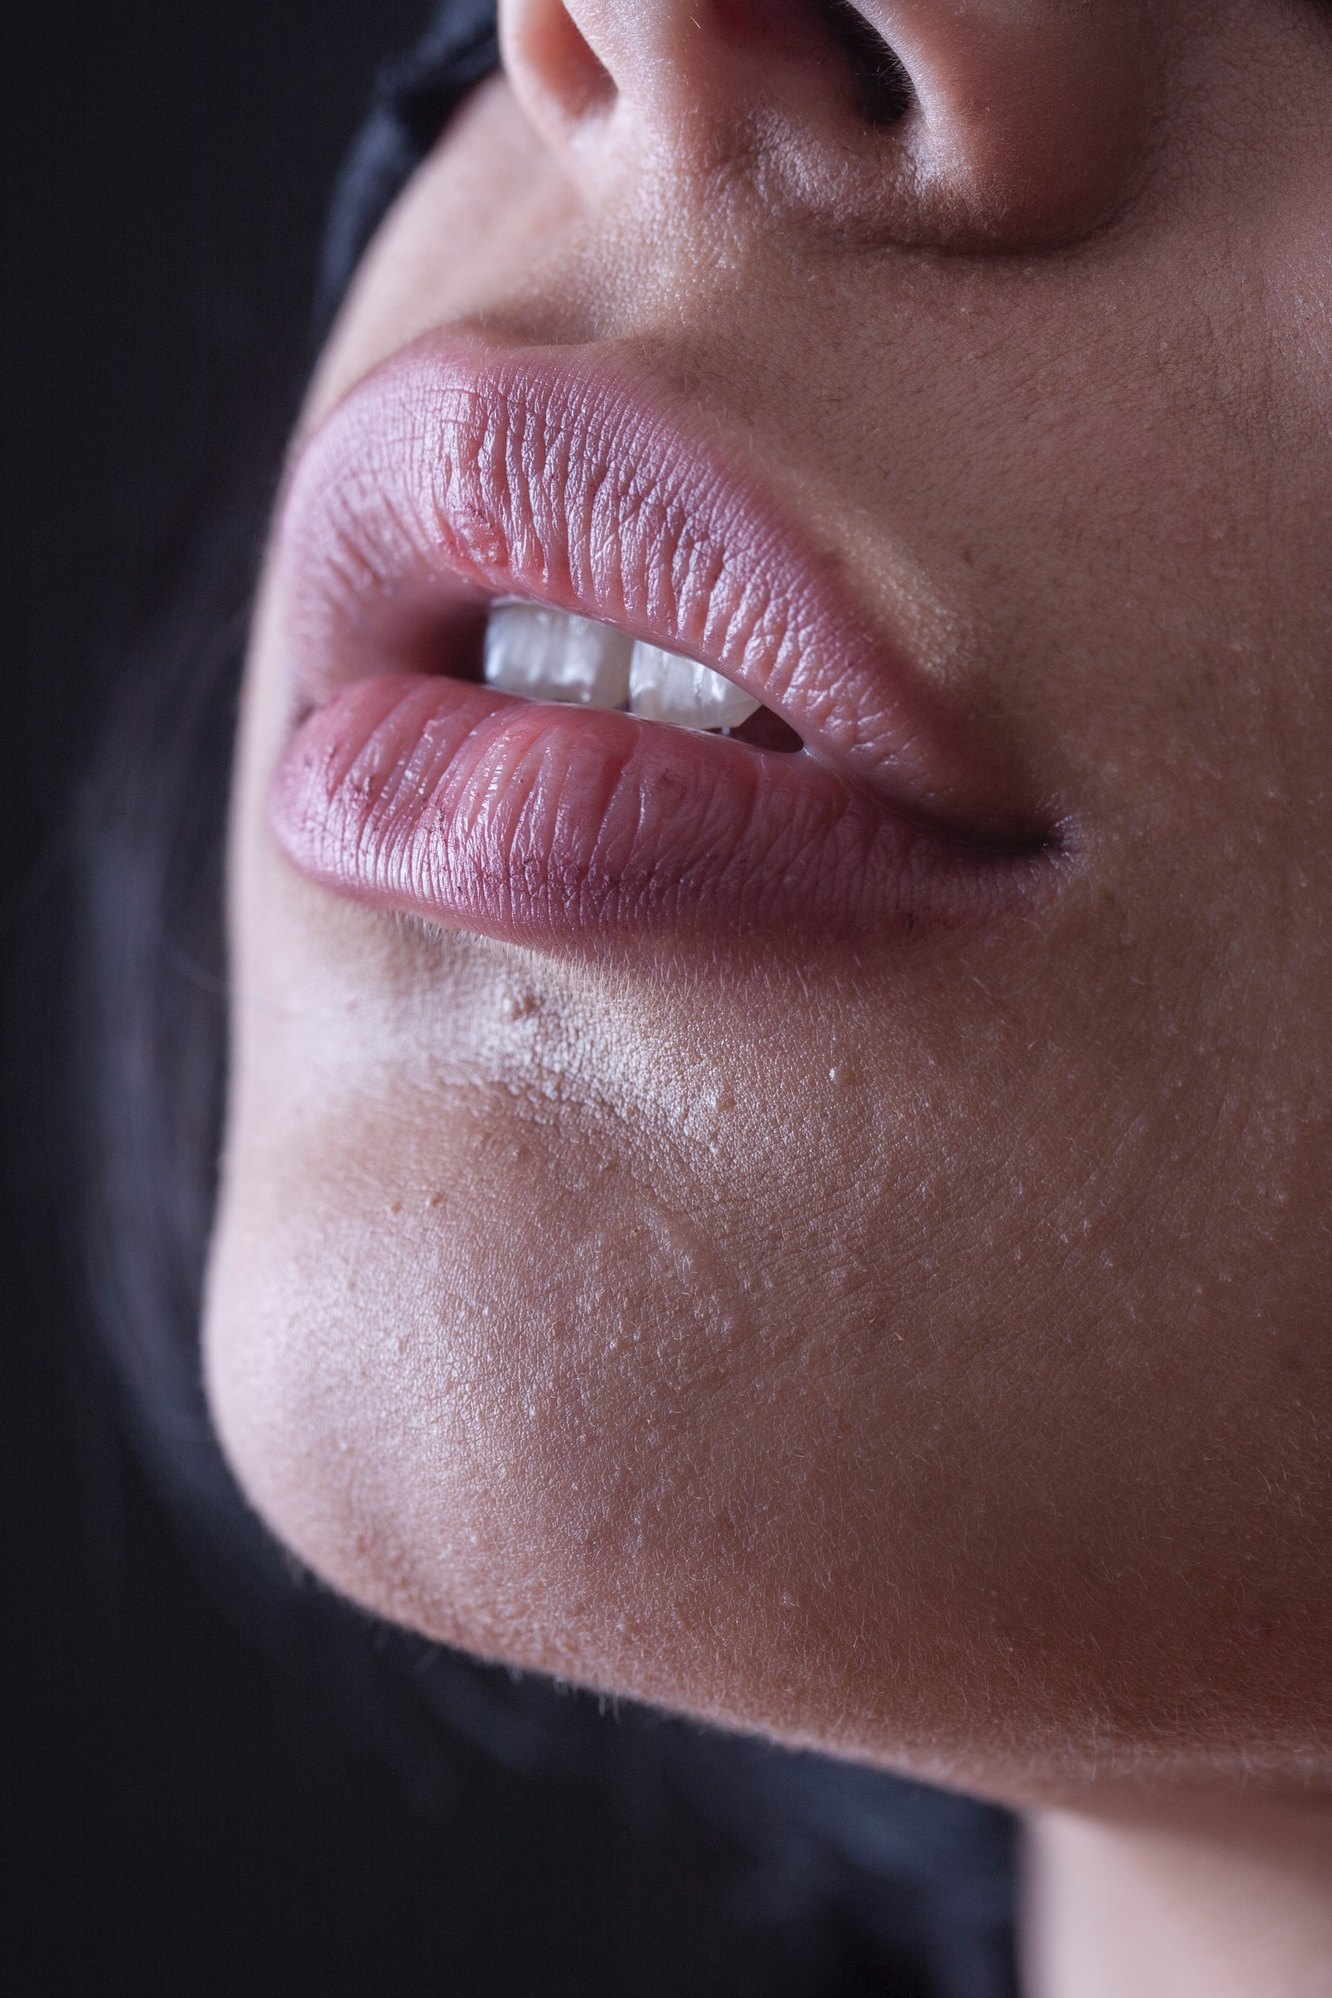 Почему губы меняют цвет: осторожно, это может быть симптомом тяжелых заболеваний